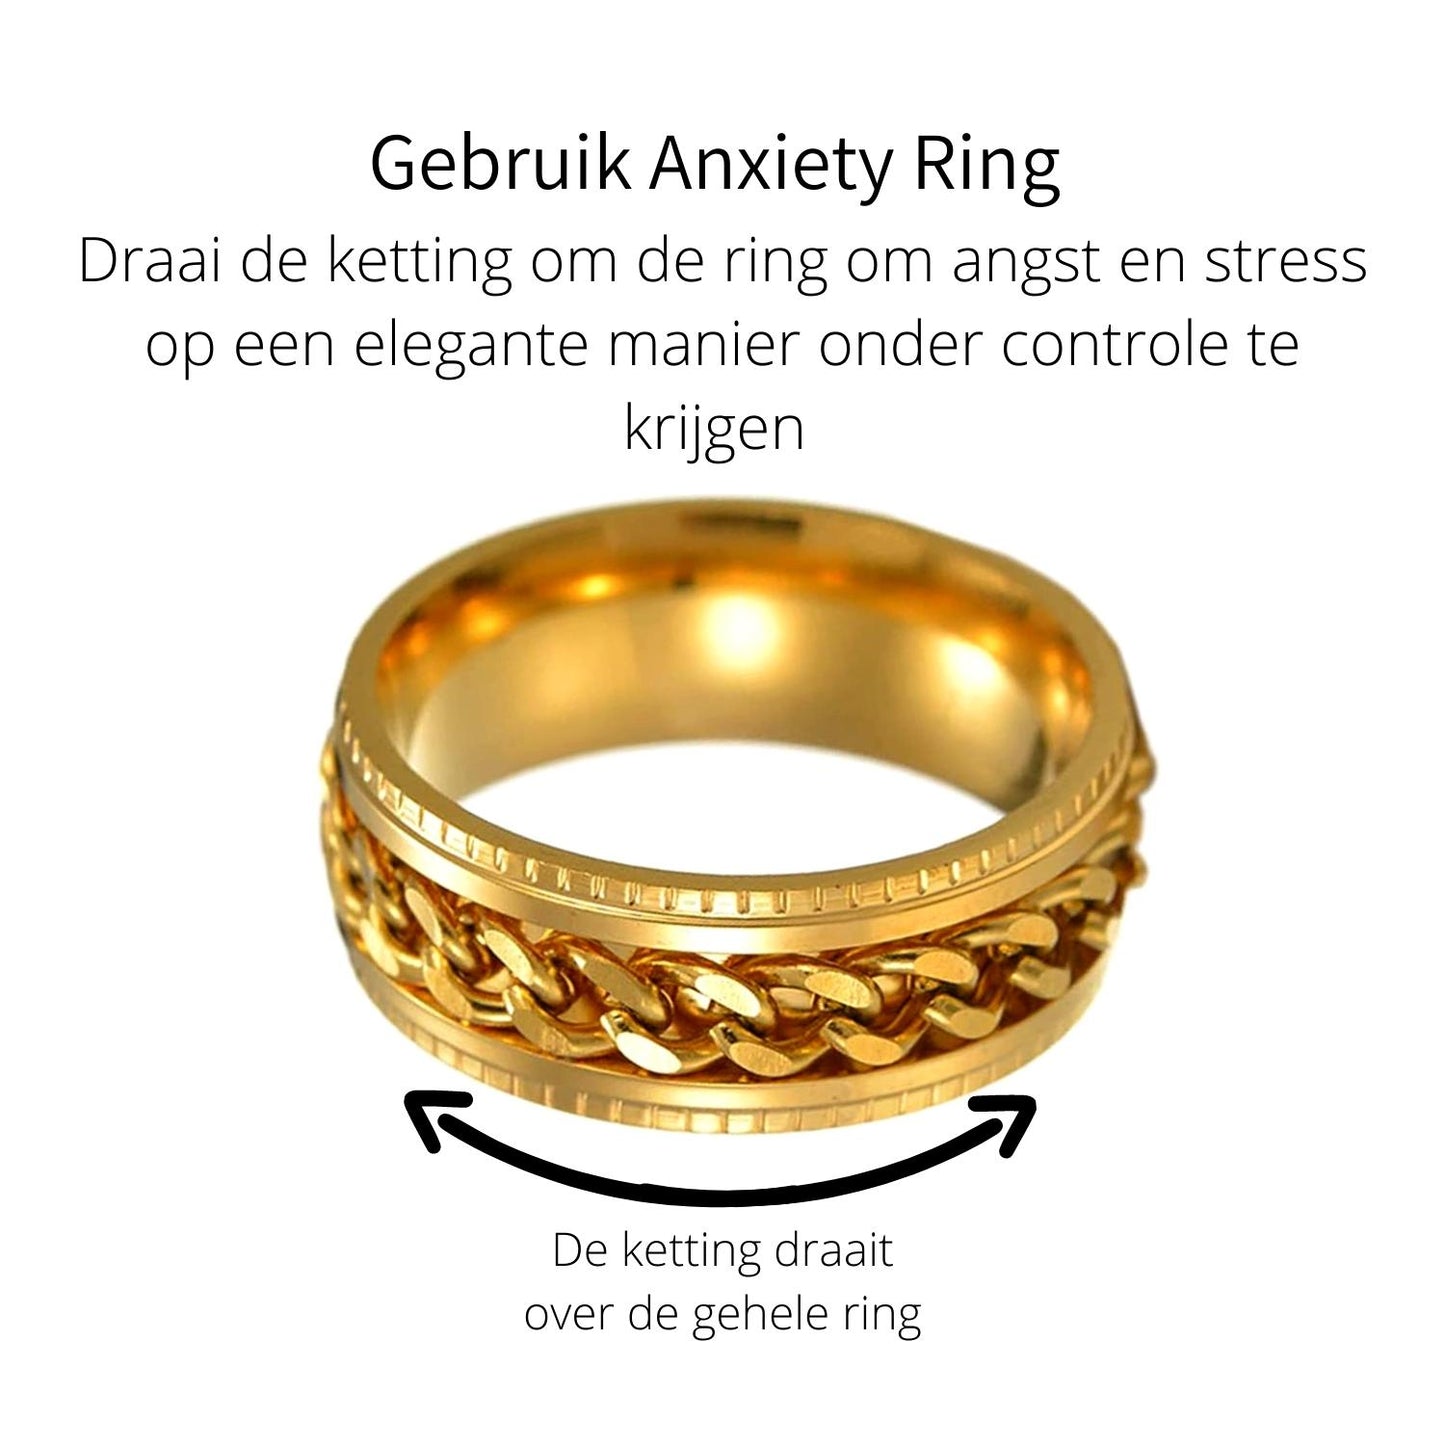 Anxiety Ring (ketting) Goud-Goud gebruik